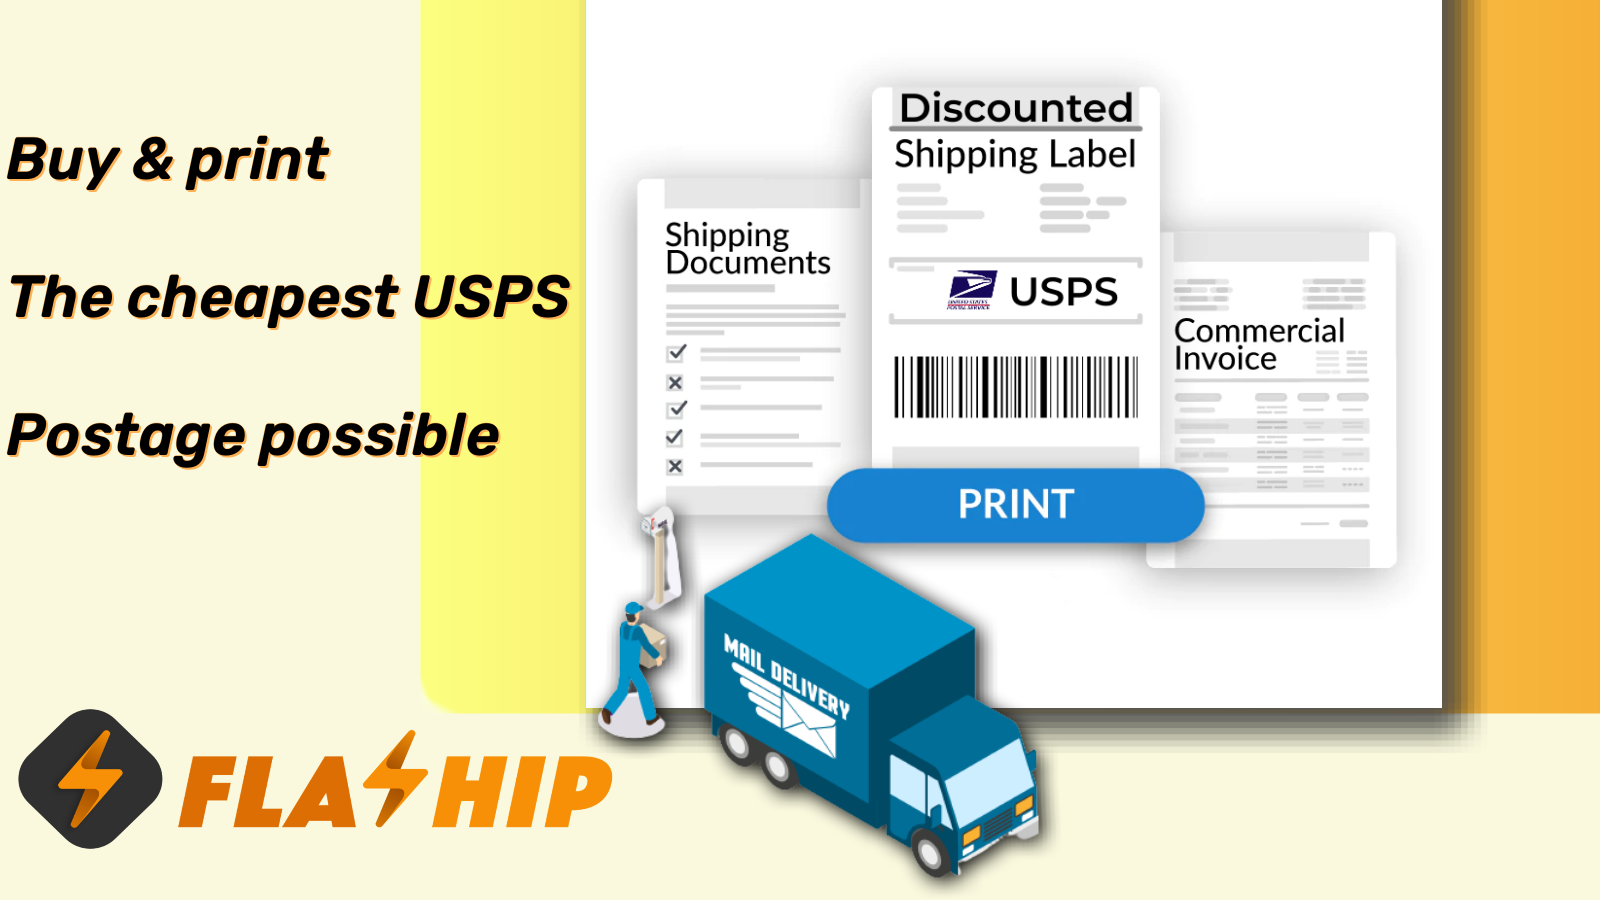 Compre e imprima a postagem USPS mais barata possível.